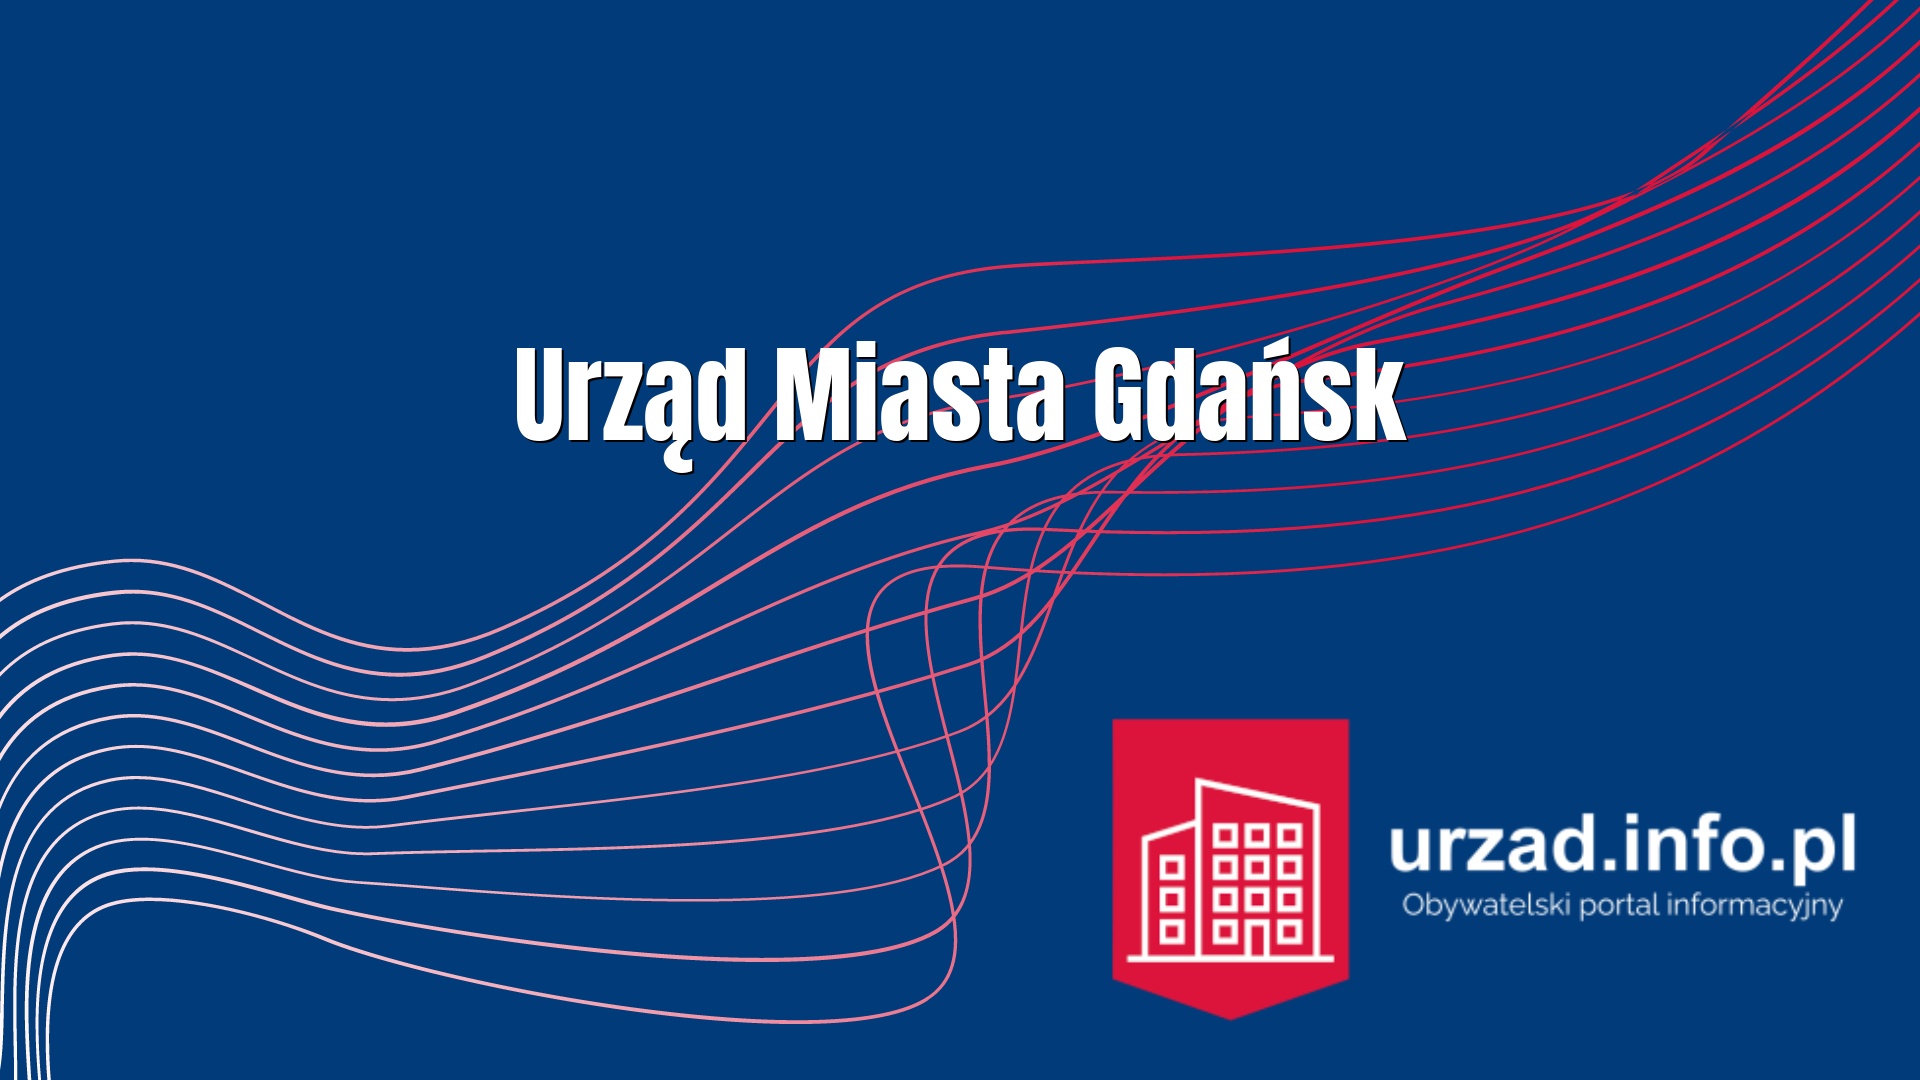 Urząd Miasta Gdańsk